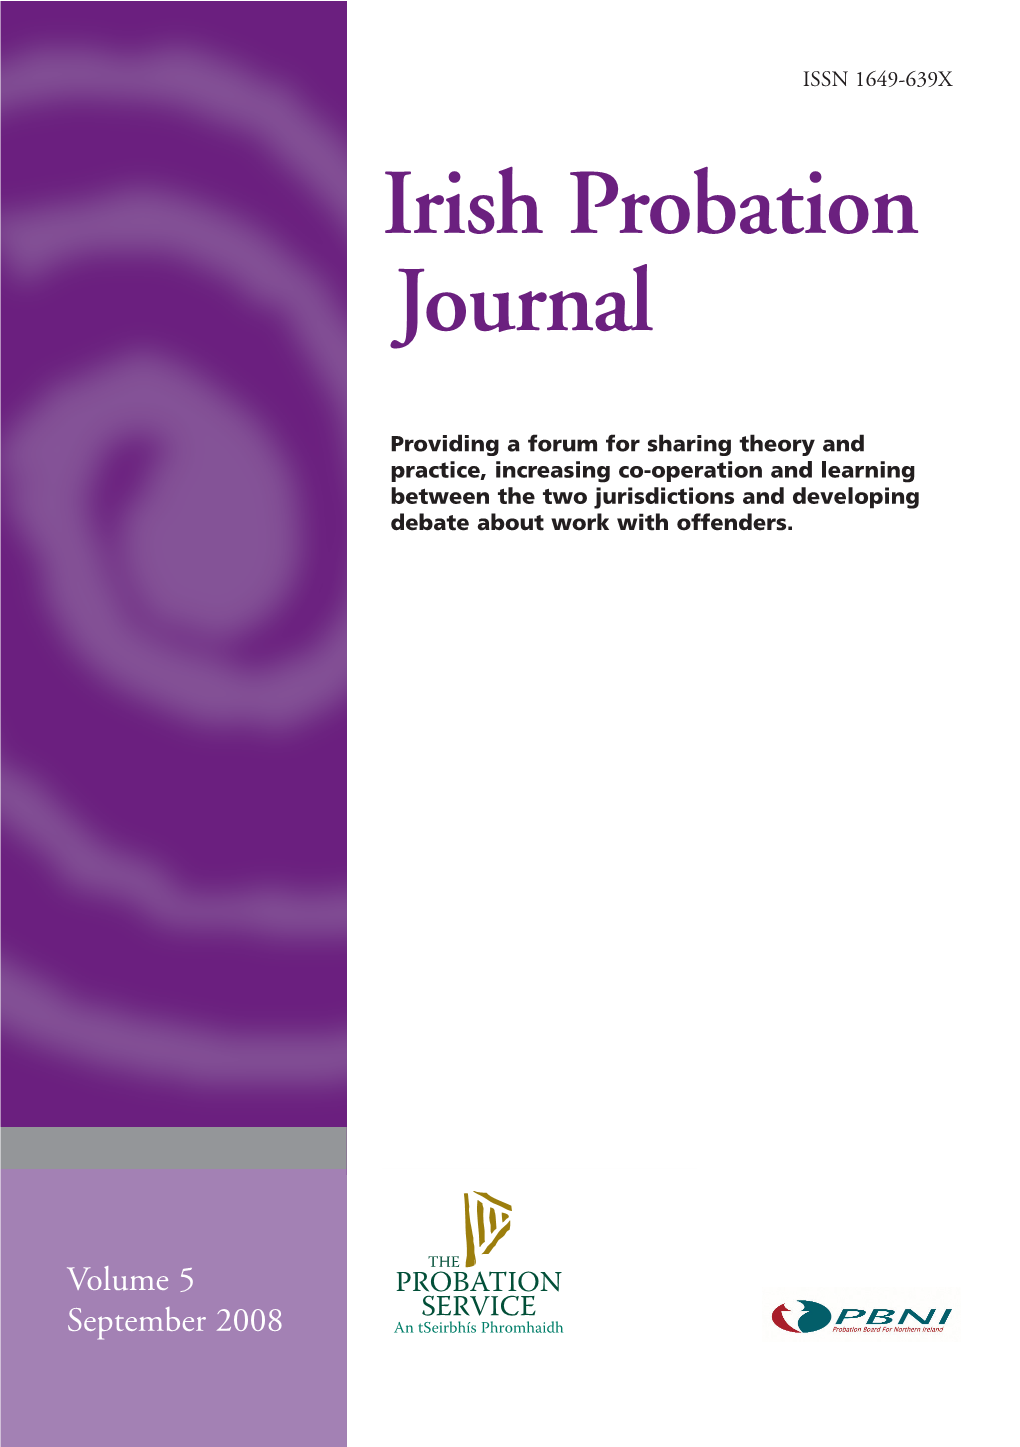 IPJ Cover Vol. 5